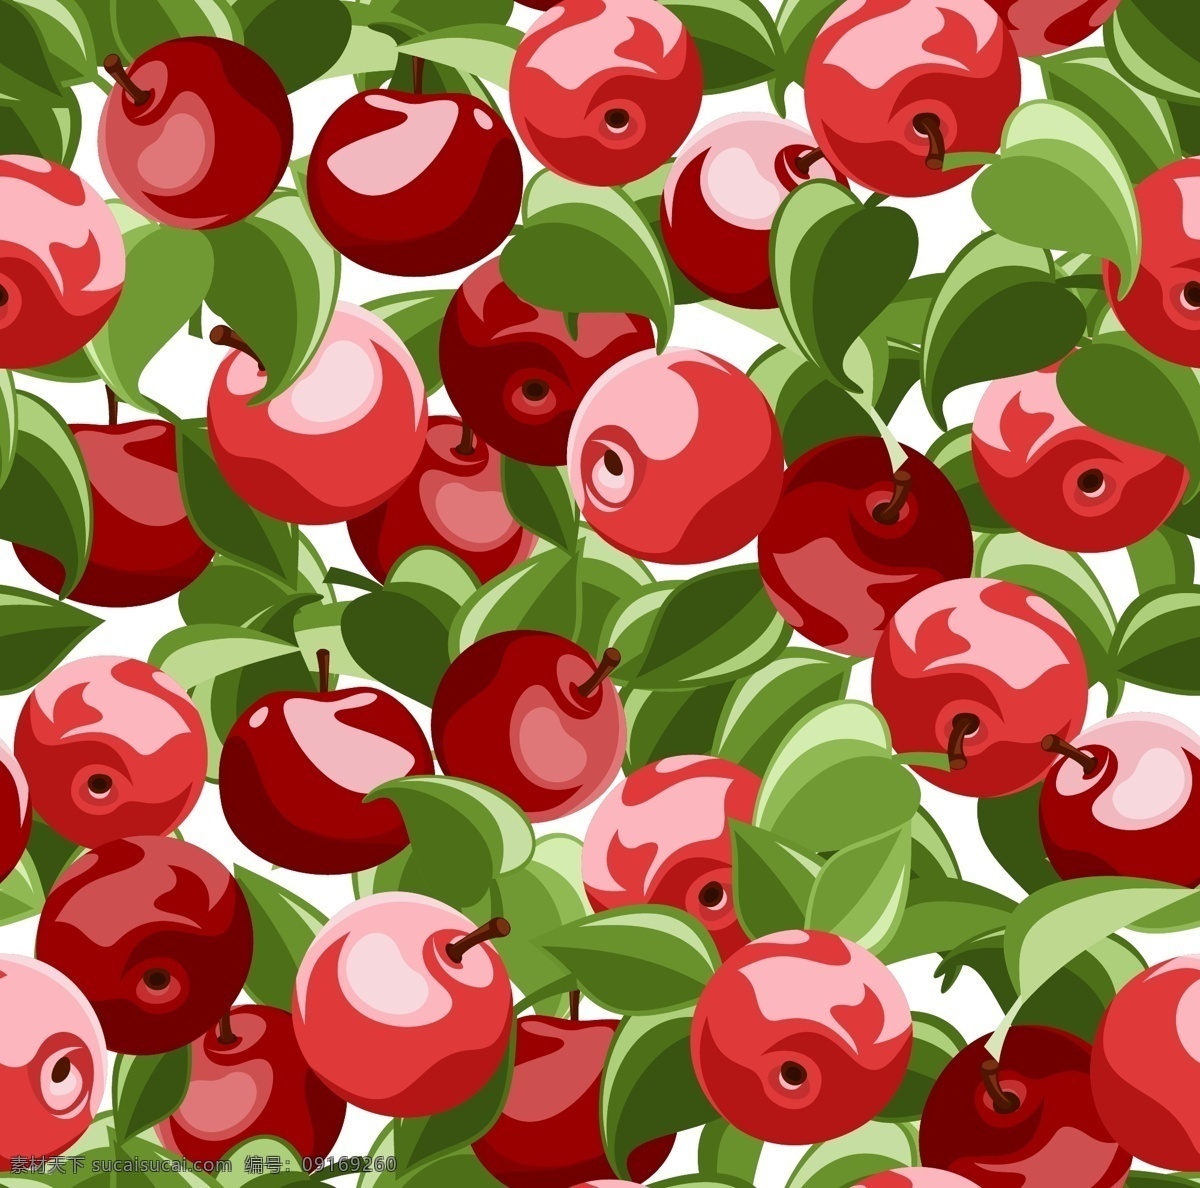 红色 苹果 矢量 填充 背景 矢量素材 设计素材 背景素材